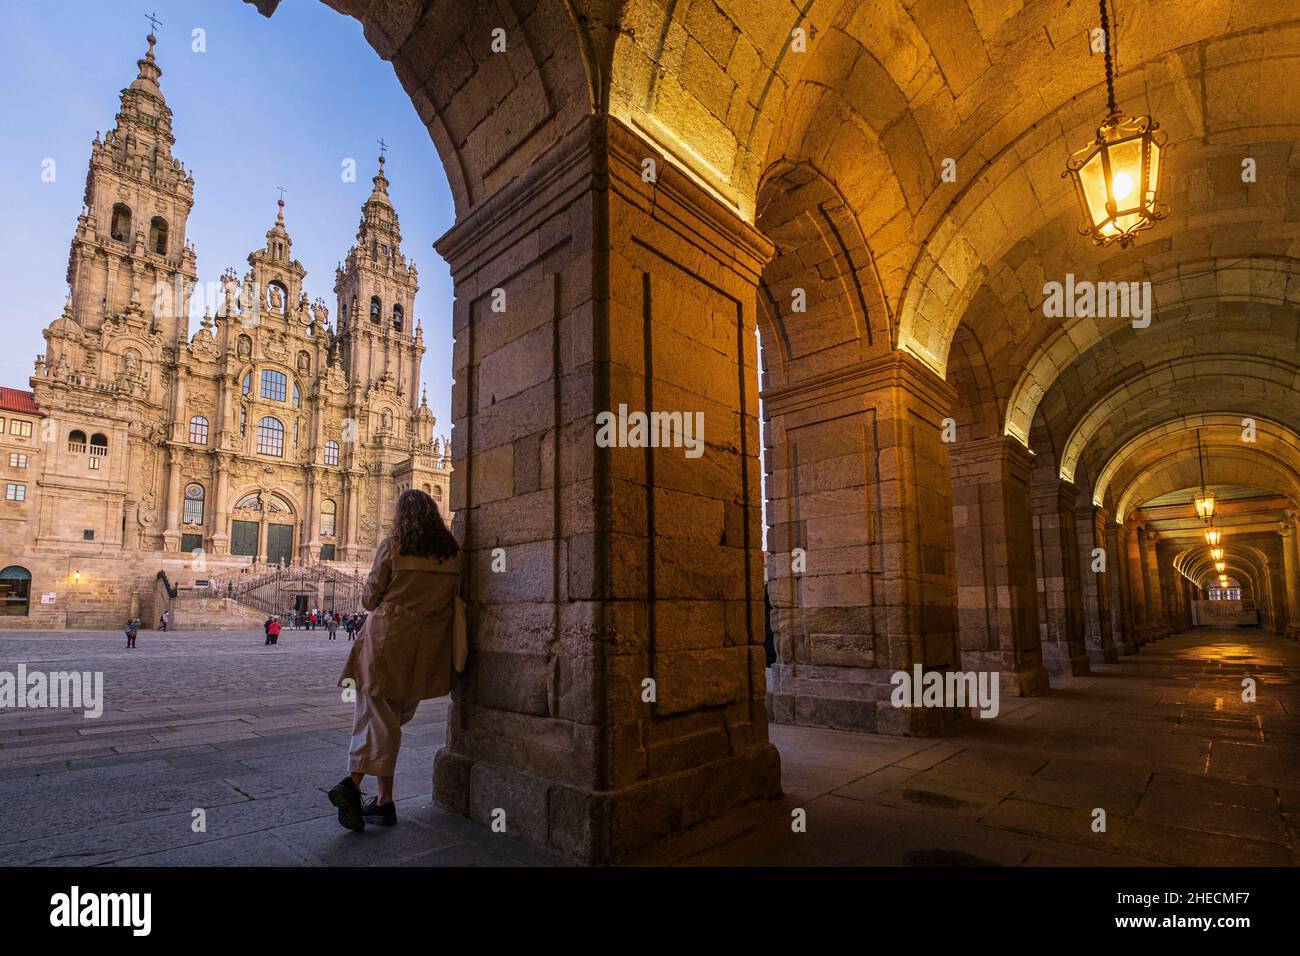 Spain, Galicia, Santiago de Compostela, the old city (UNESCO World Heritage Site), the 11th century Santiago de Compostela cathedral and Praza do Obradoiro Stock Photo